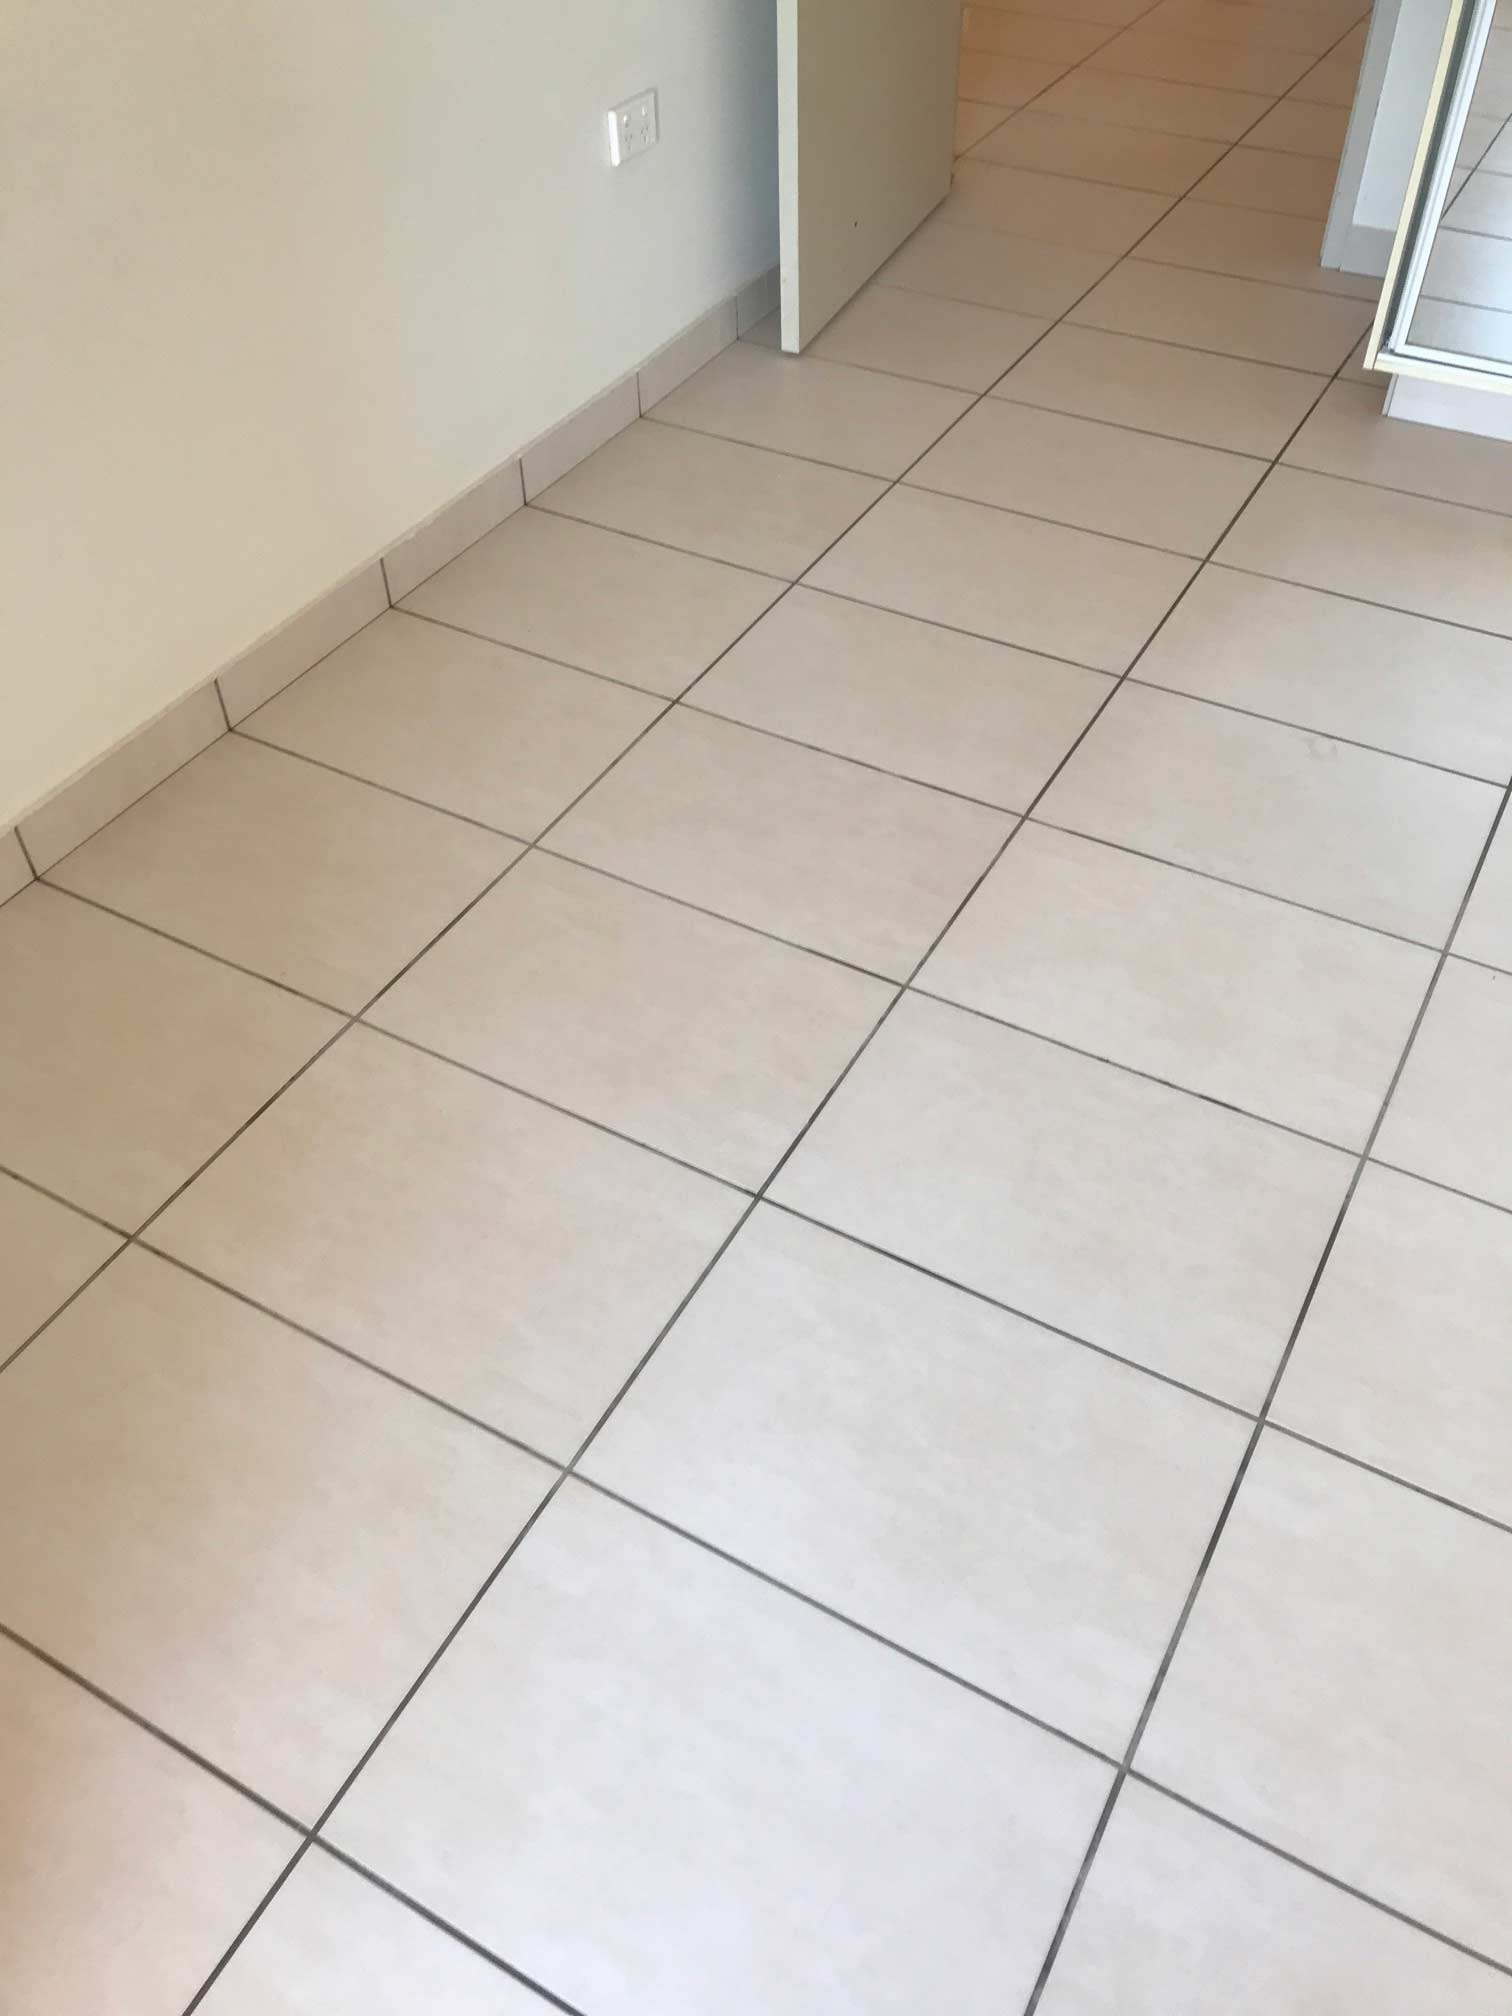 clean kitchen floor